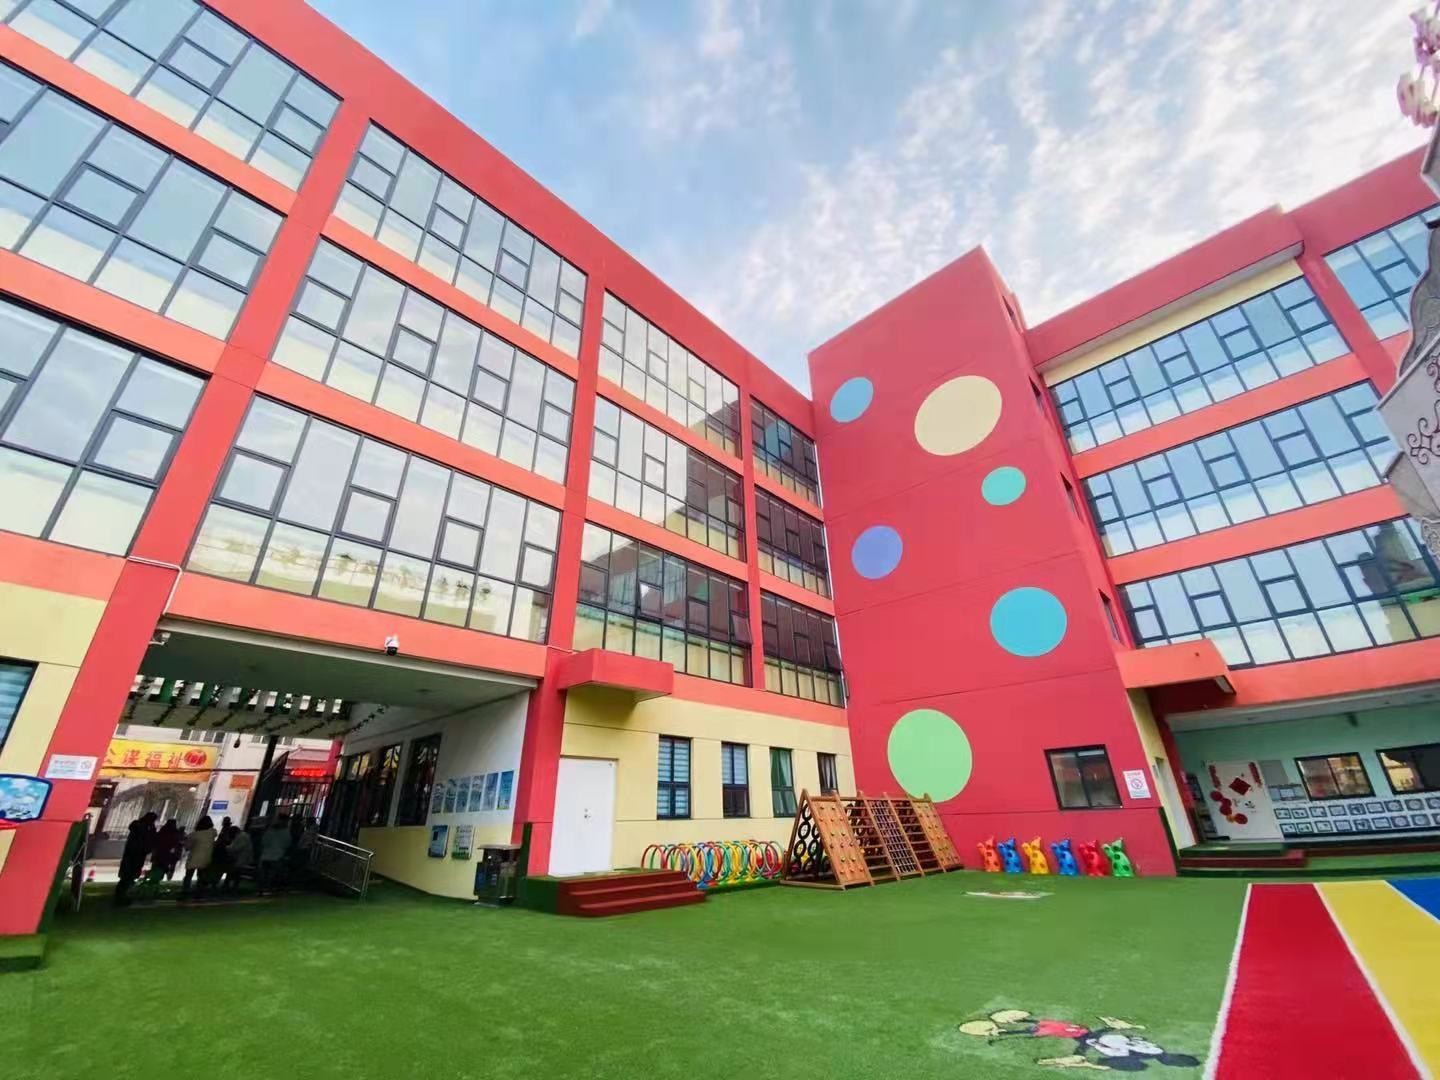 搭建学习平台 助推人才培养 ——高新第一幼儿园接待江门幼高专学生见习活动